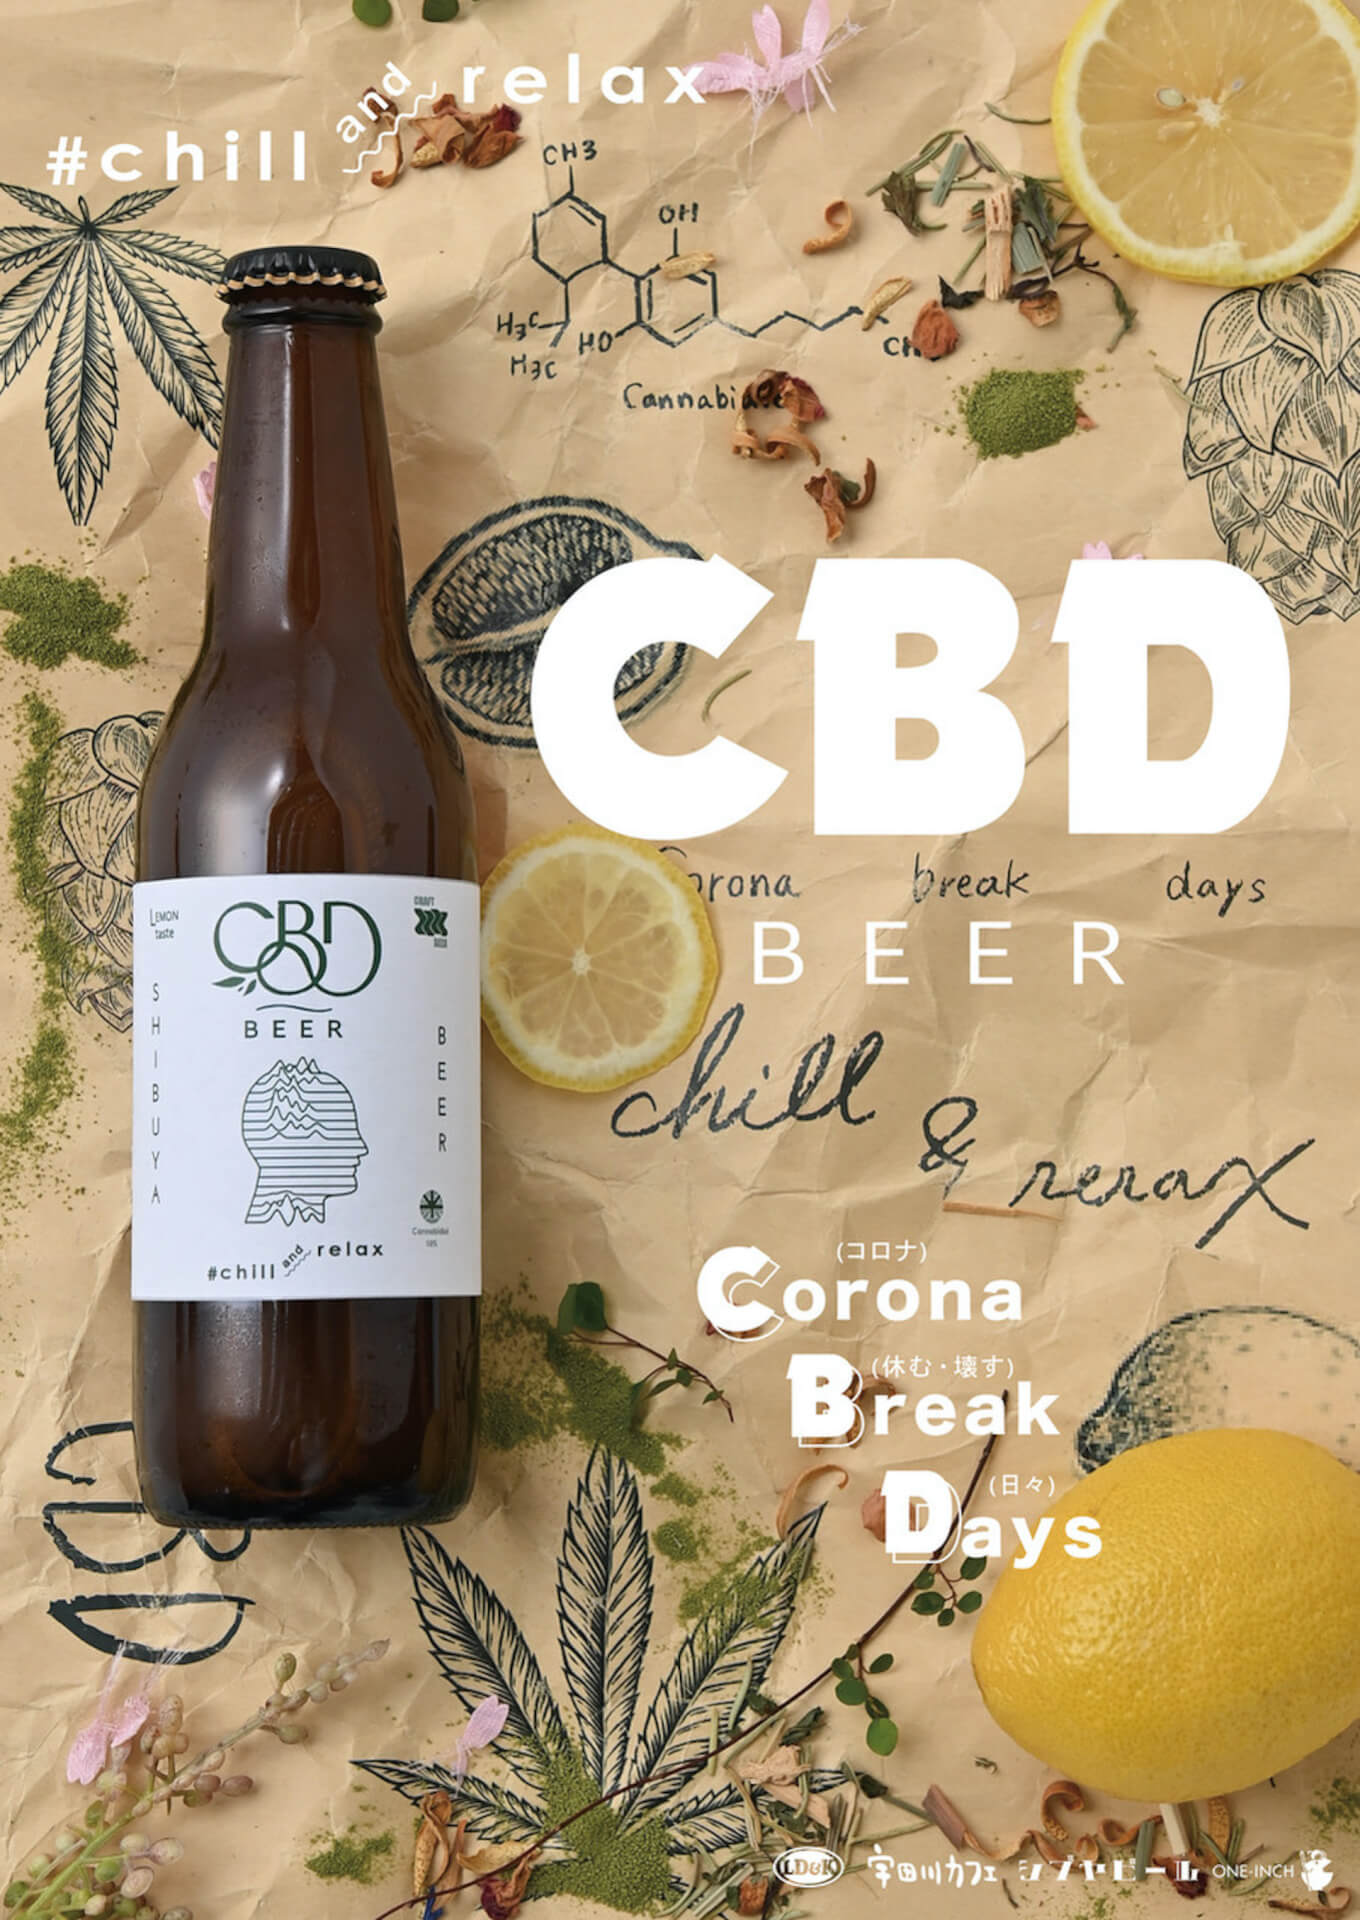 注目のリラックスアイテム「CBD」を配合したメンタルエナジービール『CBD Beer #chill＆relax』が待望の再発売！ culture_210702_CBDbeer1